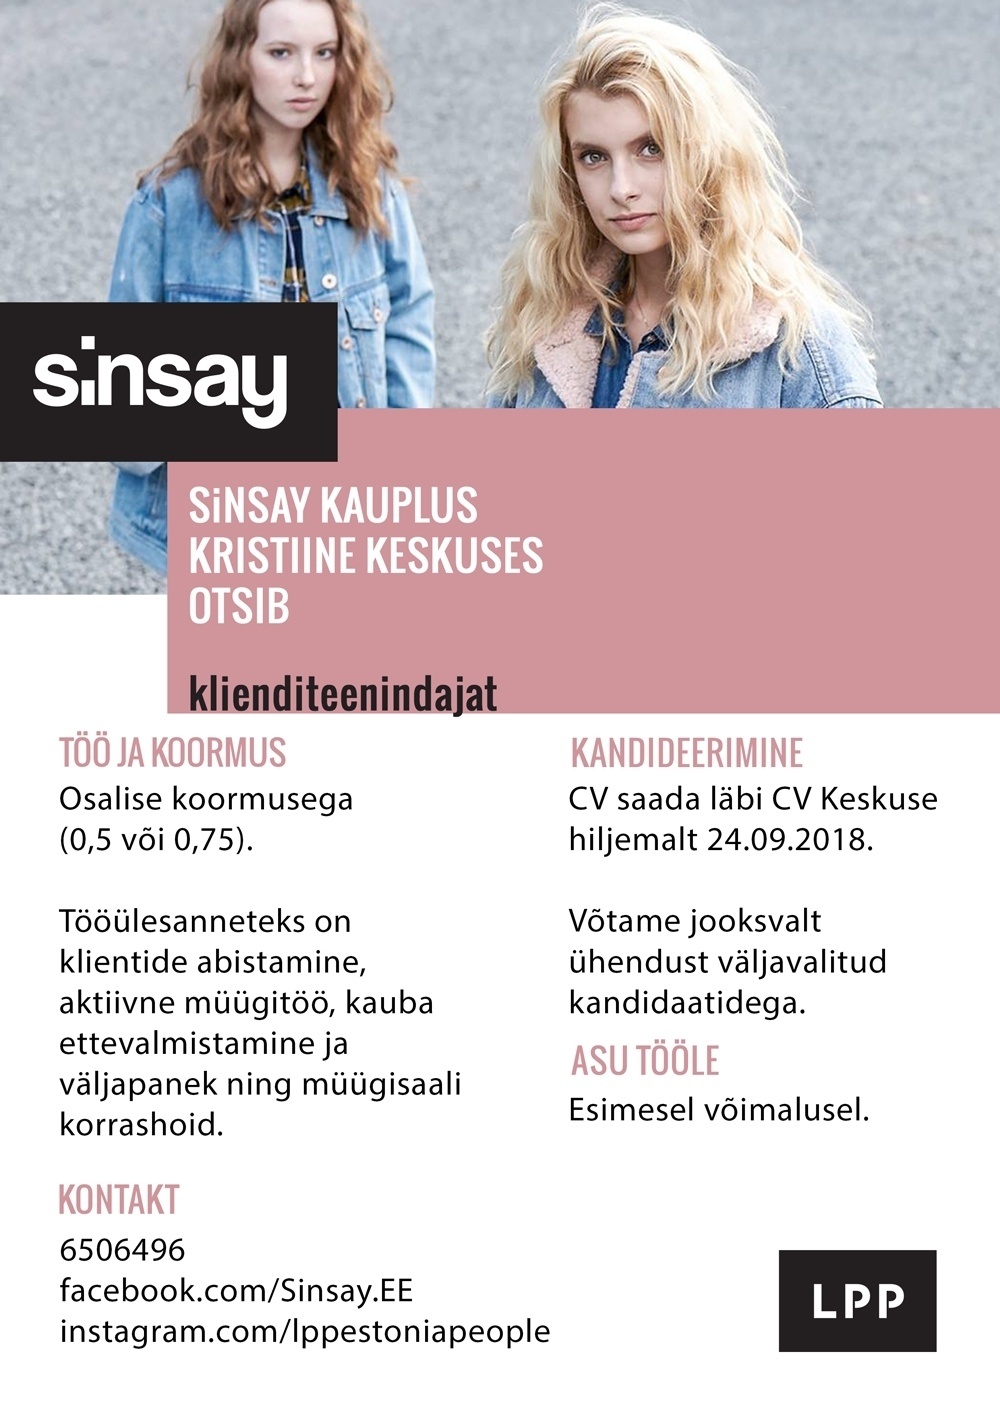 LPP Estonia OÜ Klienditeenidaja (osalise koormusega) SINSAY kauplusesse Kristiine keskuses